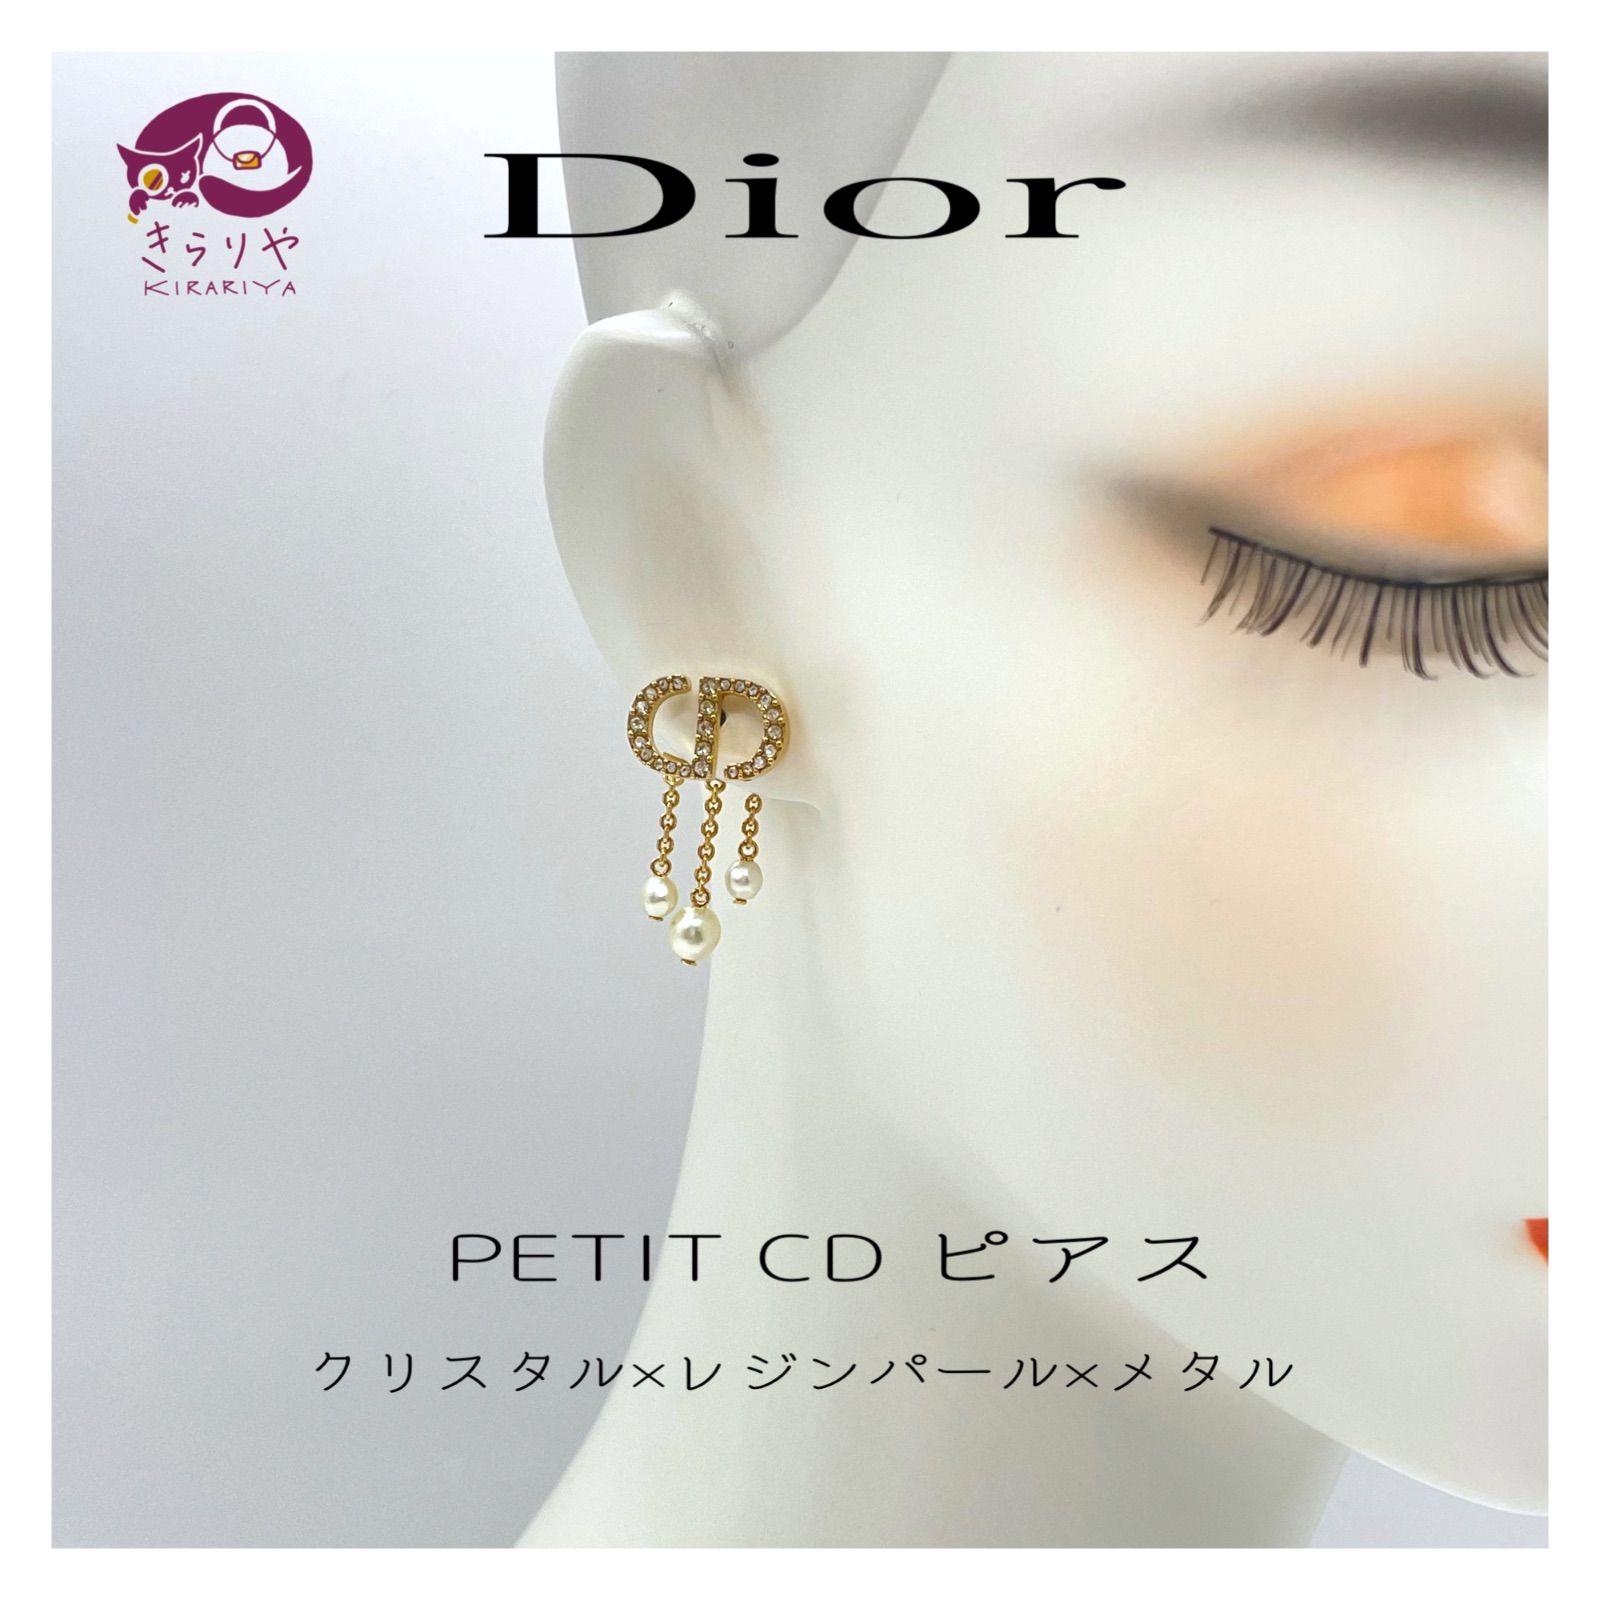 通販サイト) - ディオール PETIT CD ピアス片耳 - 値段が安い:12641円